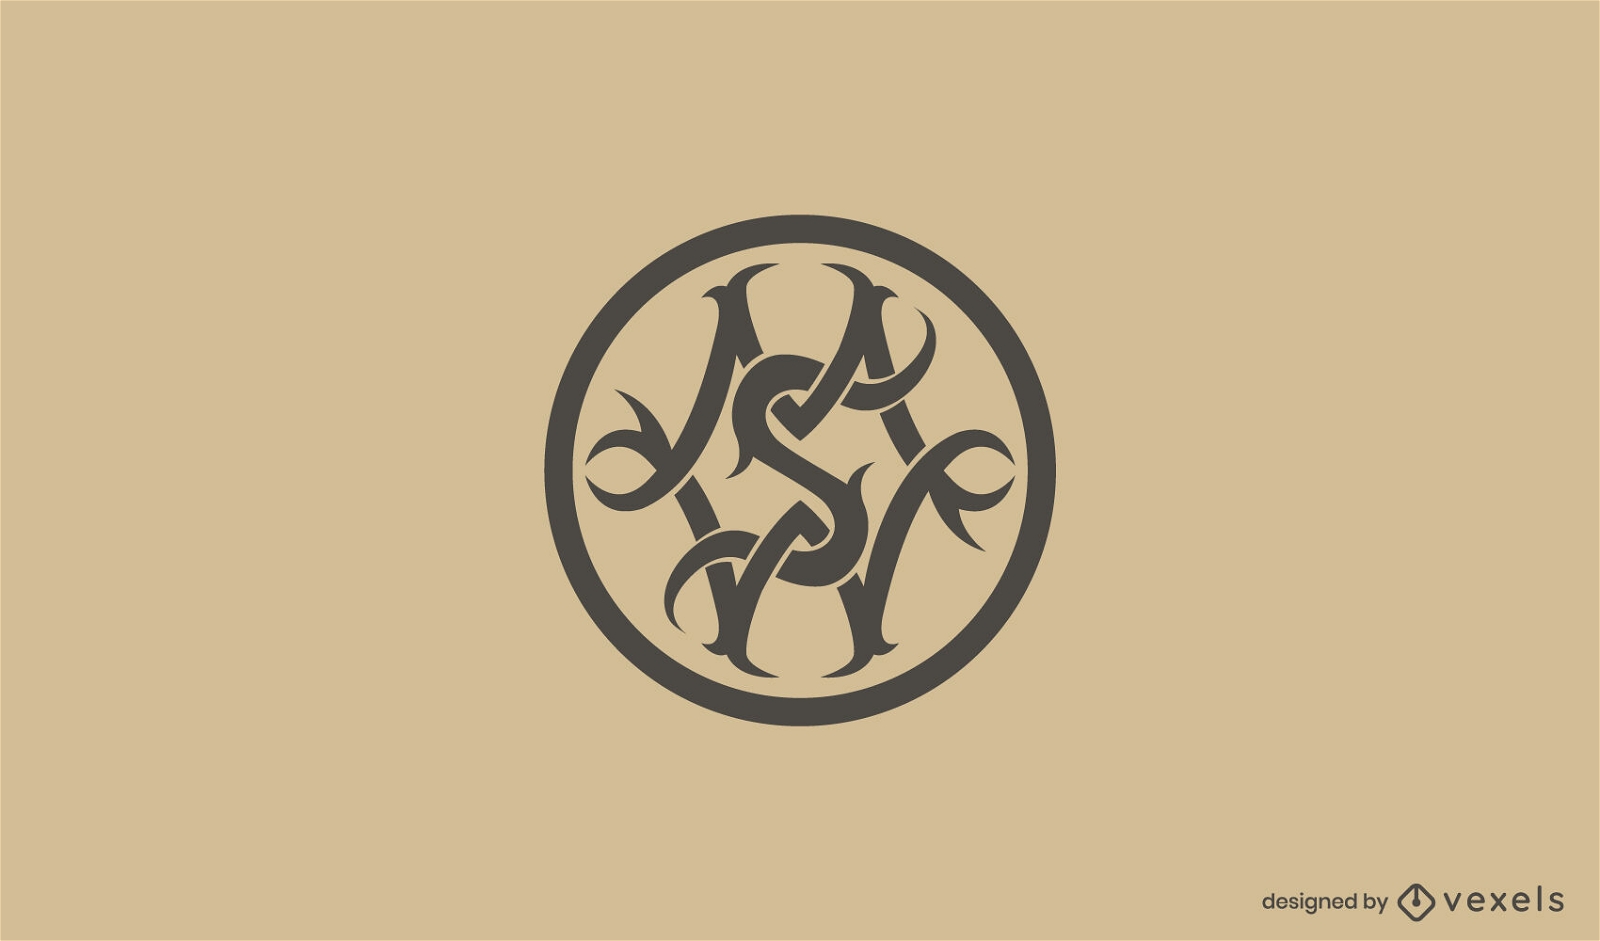 MSW keltisches Design für Logo-Vorlage